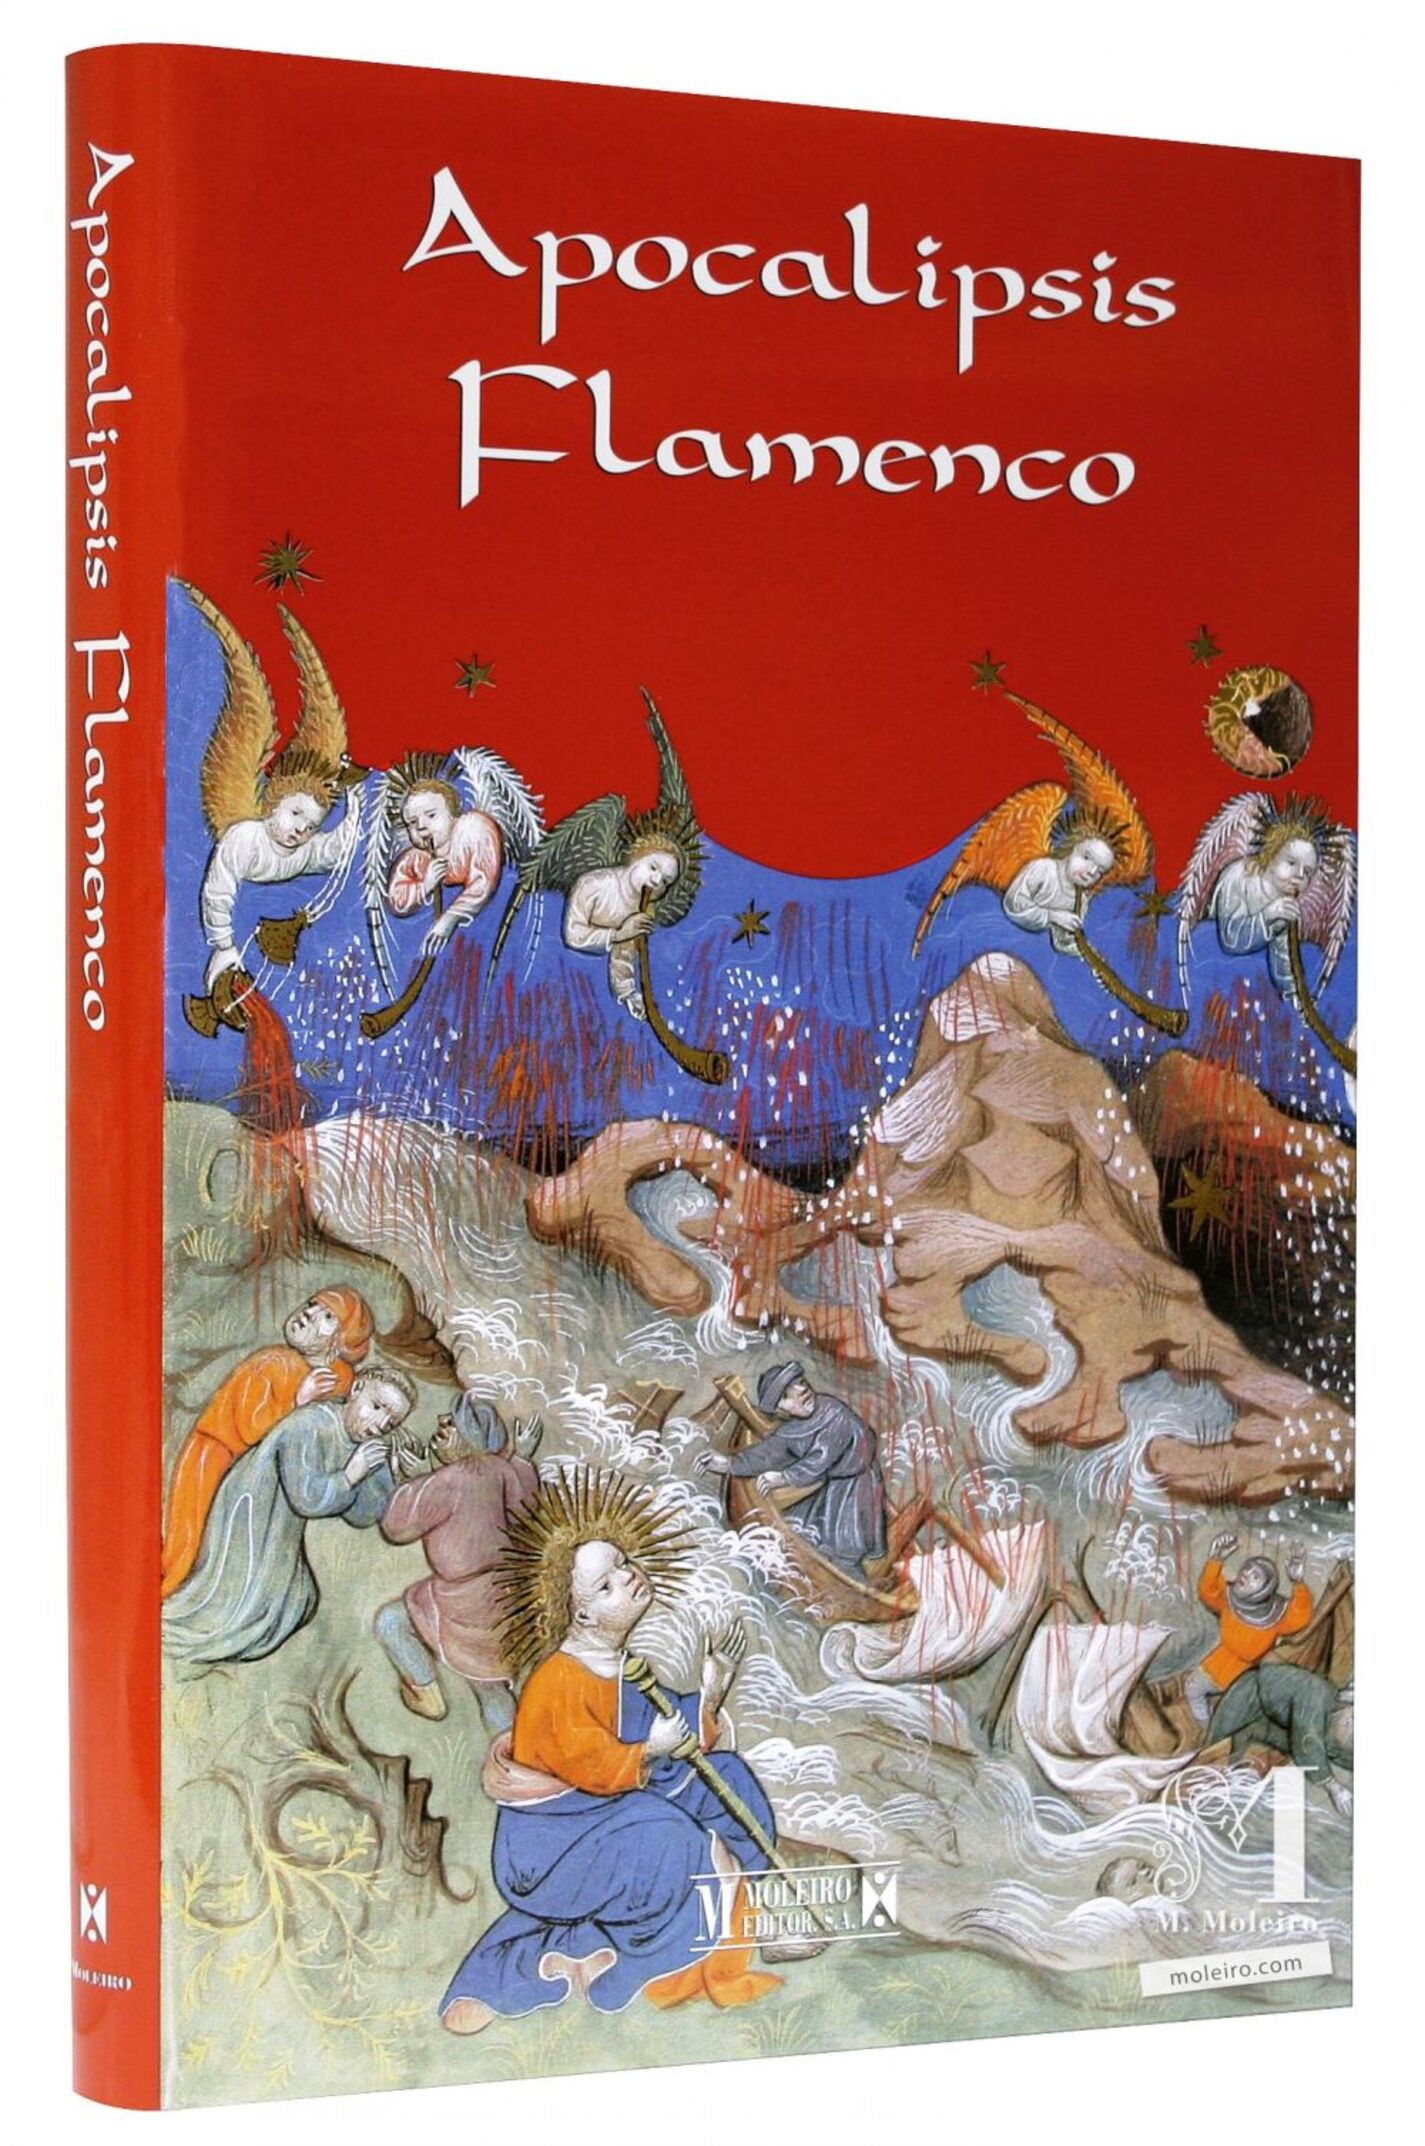 Detalle de la portada y lomo del libro de arte del Apocalipsis Flamenco (Siglo XV)